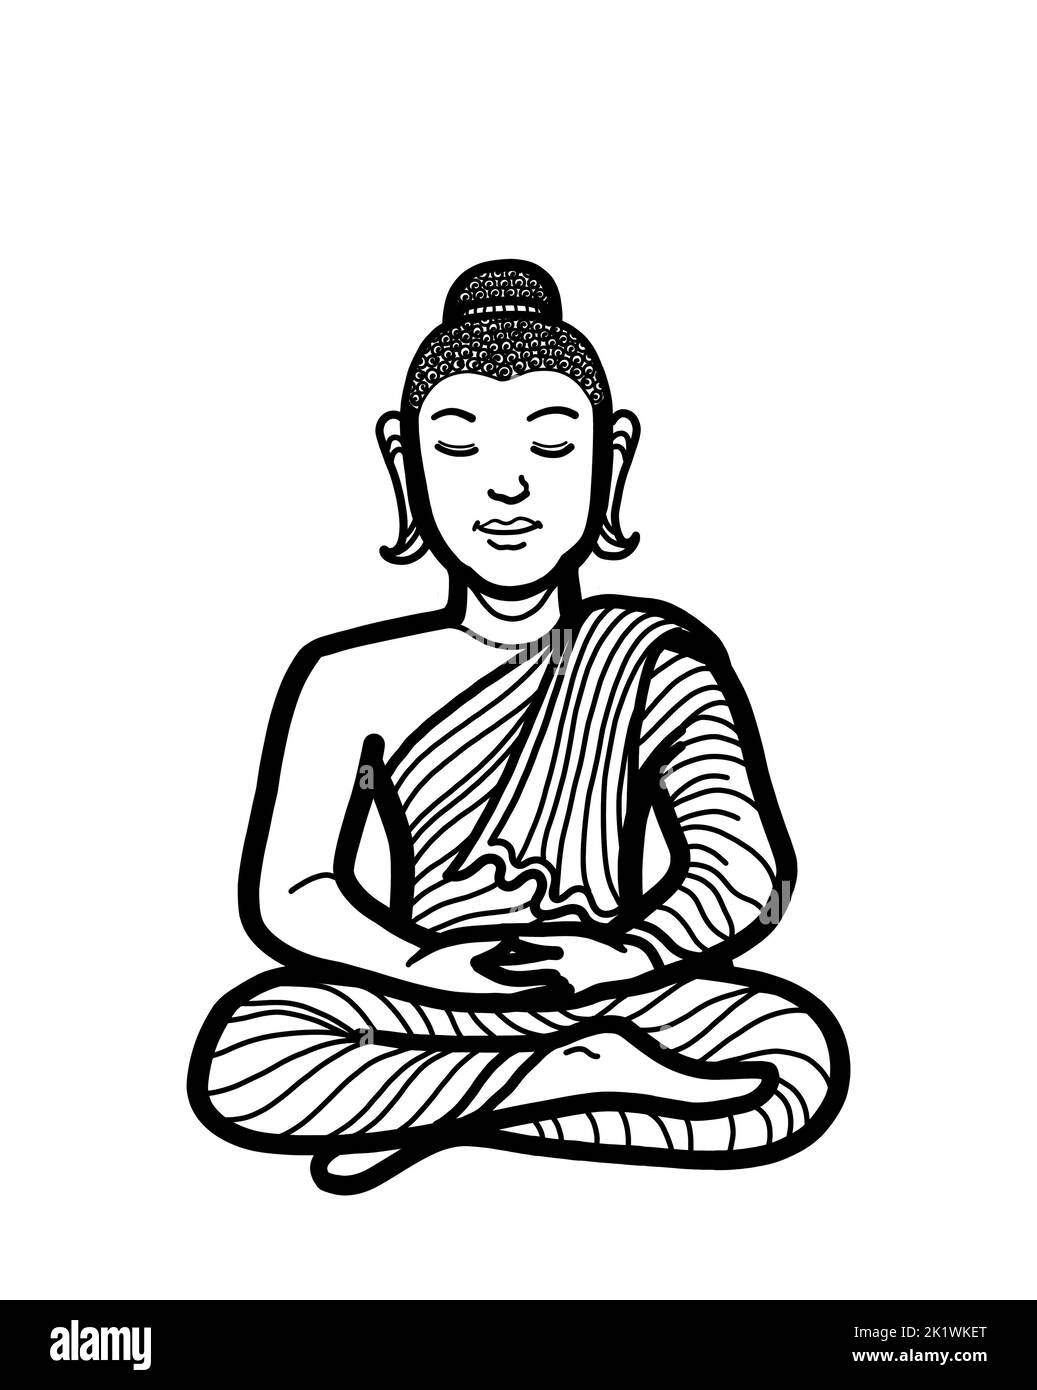 Gautama Bouddha assis dans lotus pose méditant. Pratique de la méditation bouddhiste pour l'illumination, la pleine conscience, la paix, l'harmonie et la spiritualité. Banque D'Images